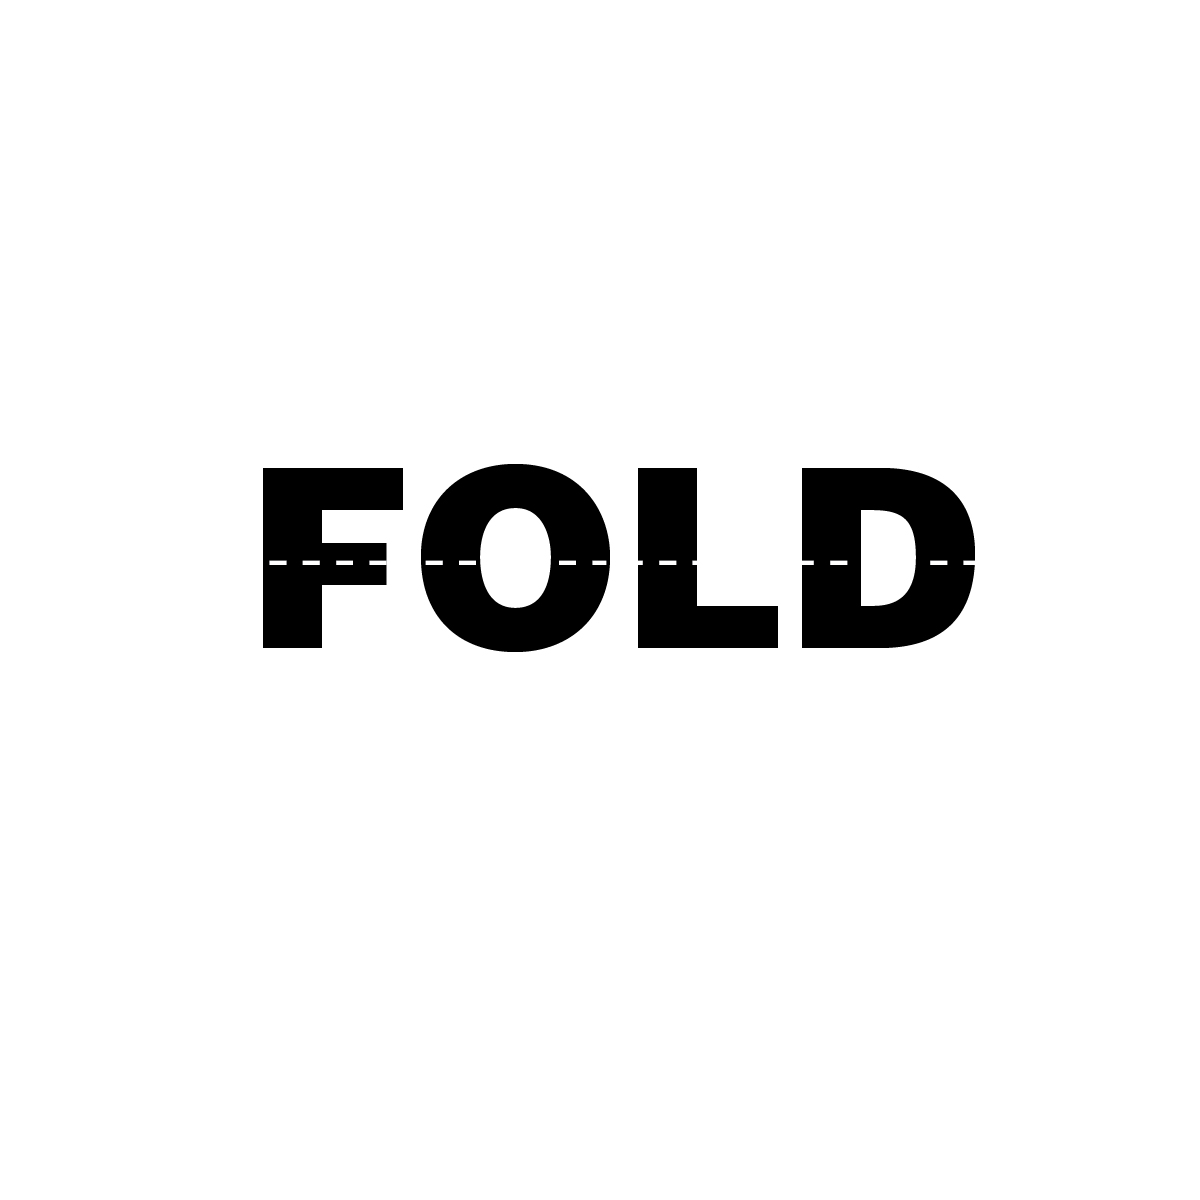 fold_fold.jpg